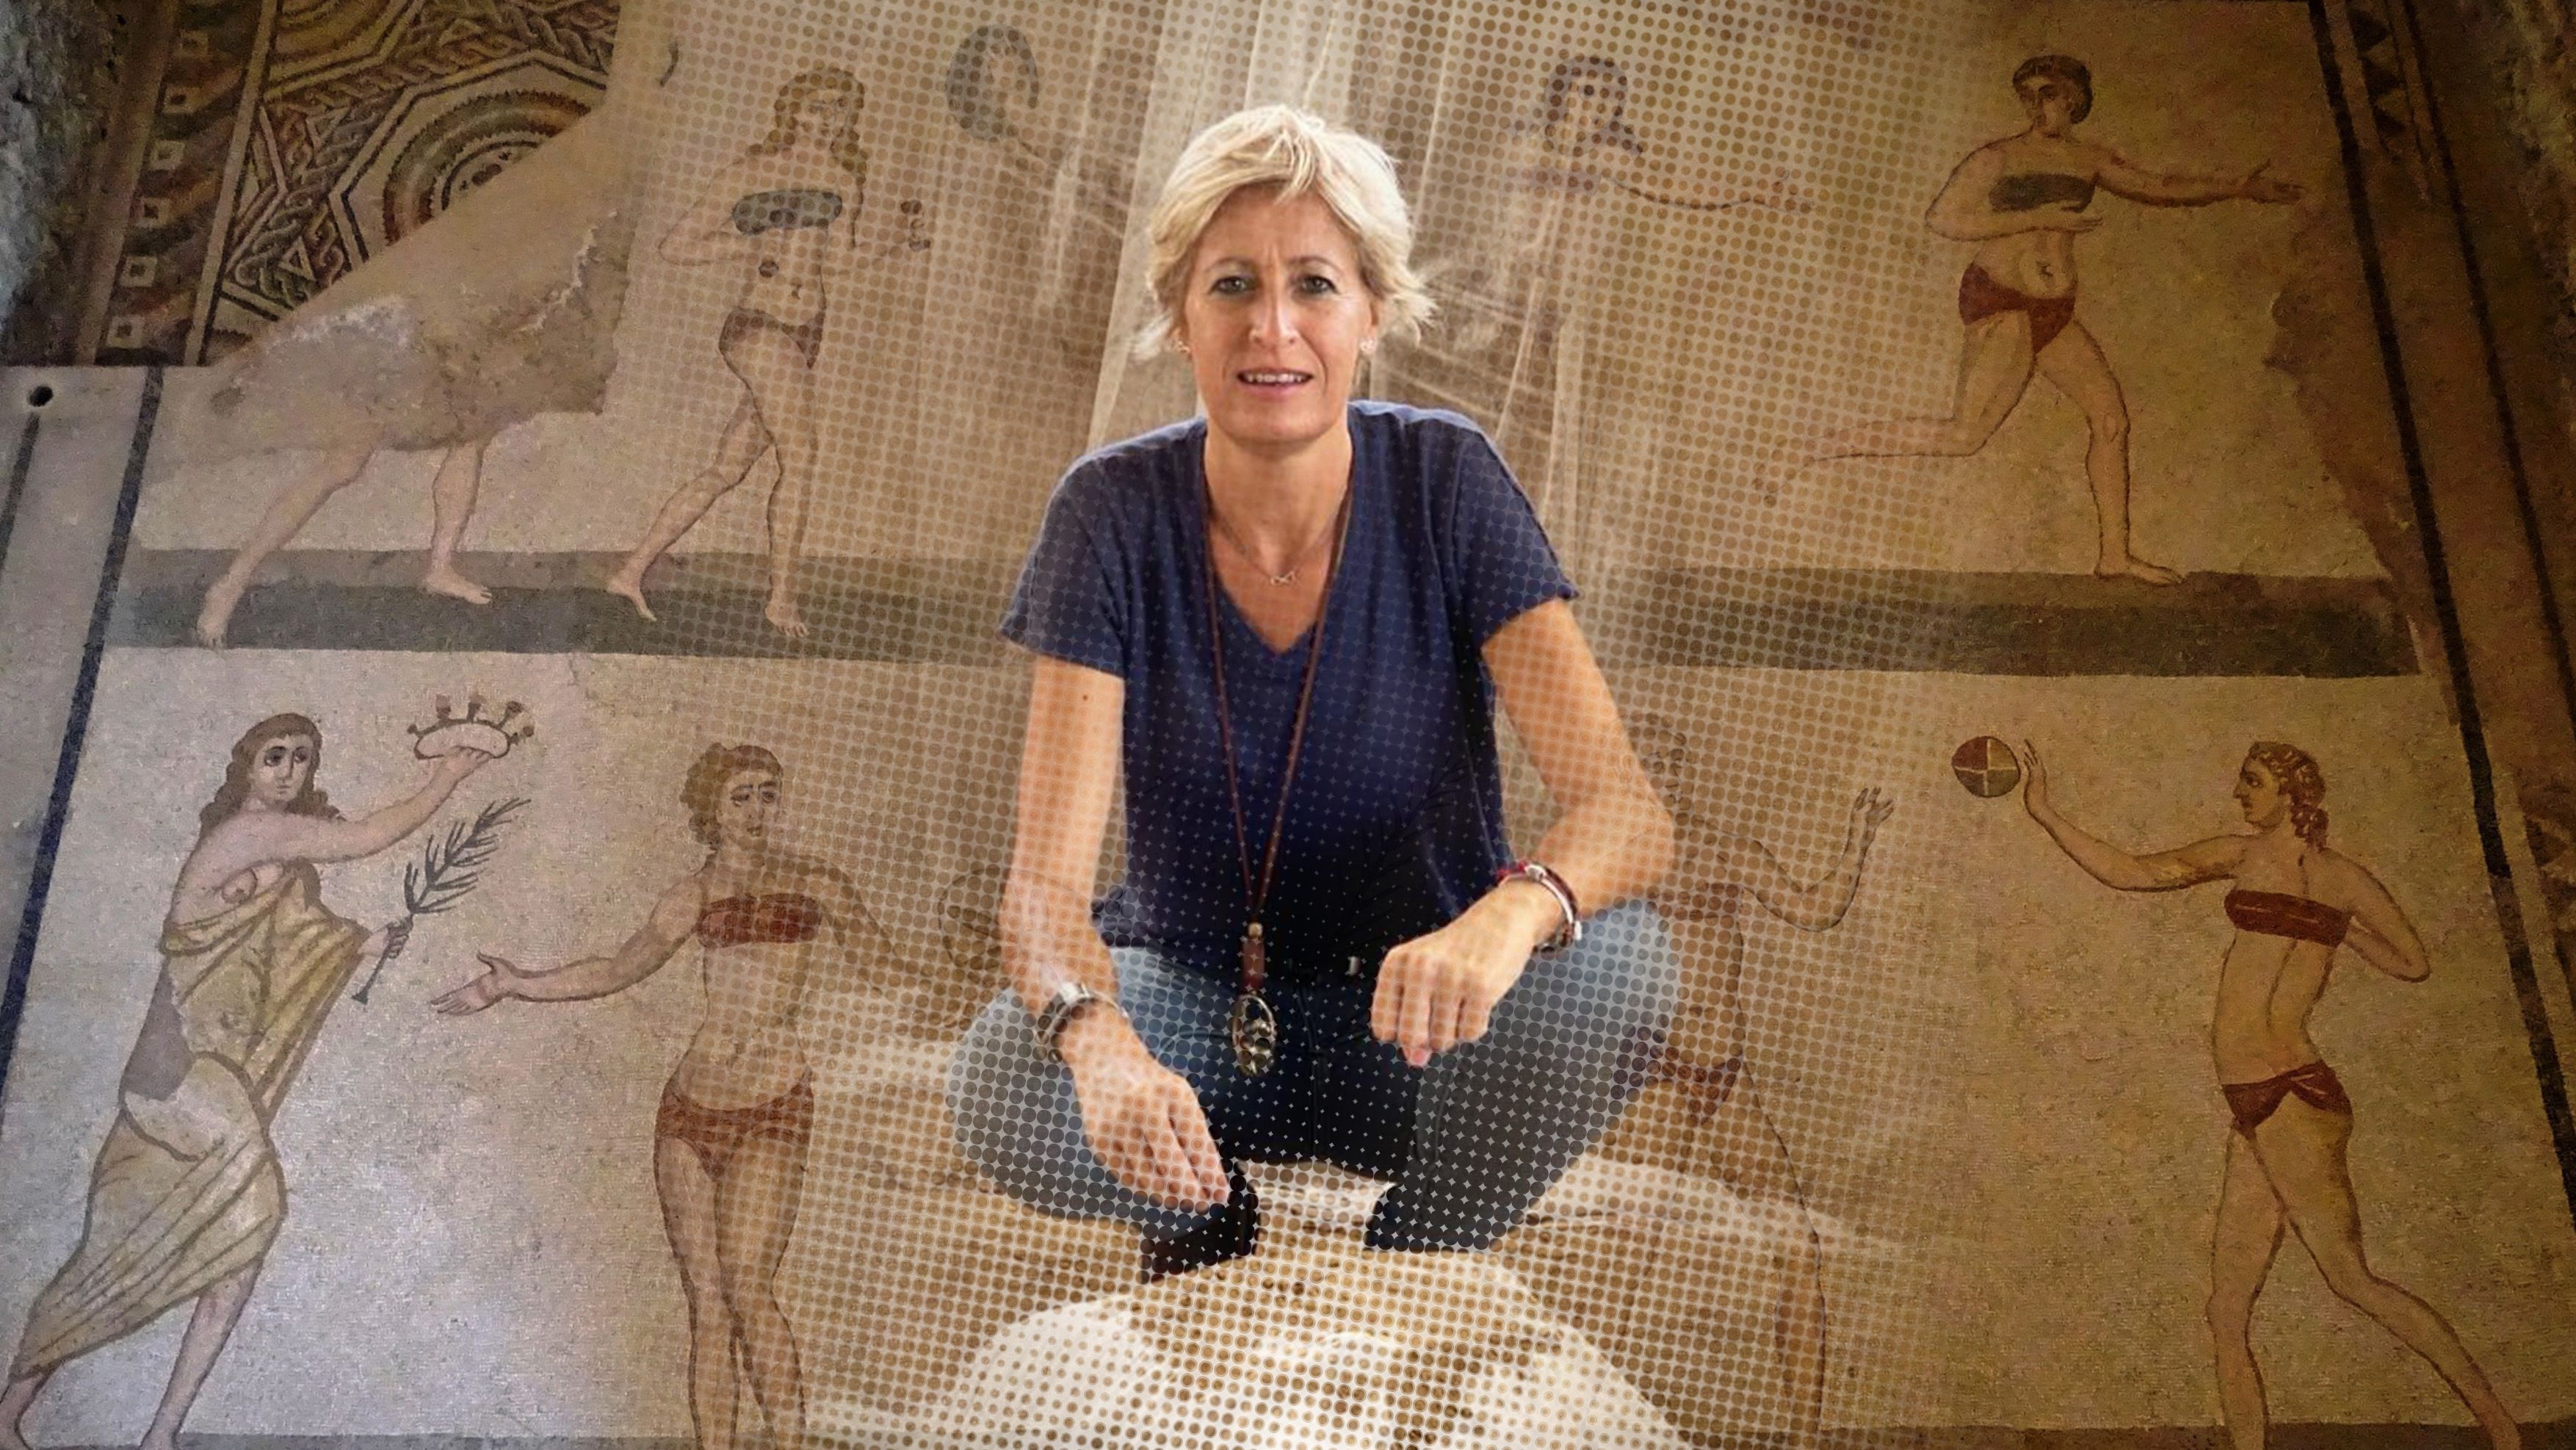  Lourdes Girón durante una excavación ante un pequeño altar en Murallas Timolonteas, ciudad helenística, en Gela (Italia) con el mosaico de 'mujeres en bikini' de fondo.